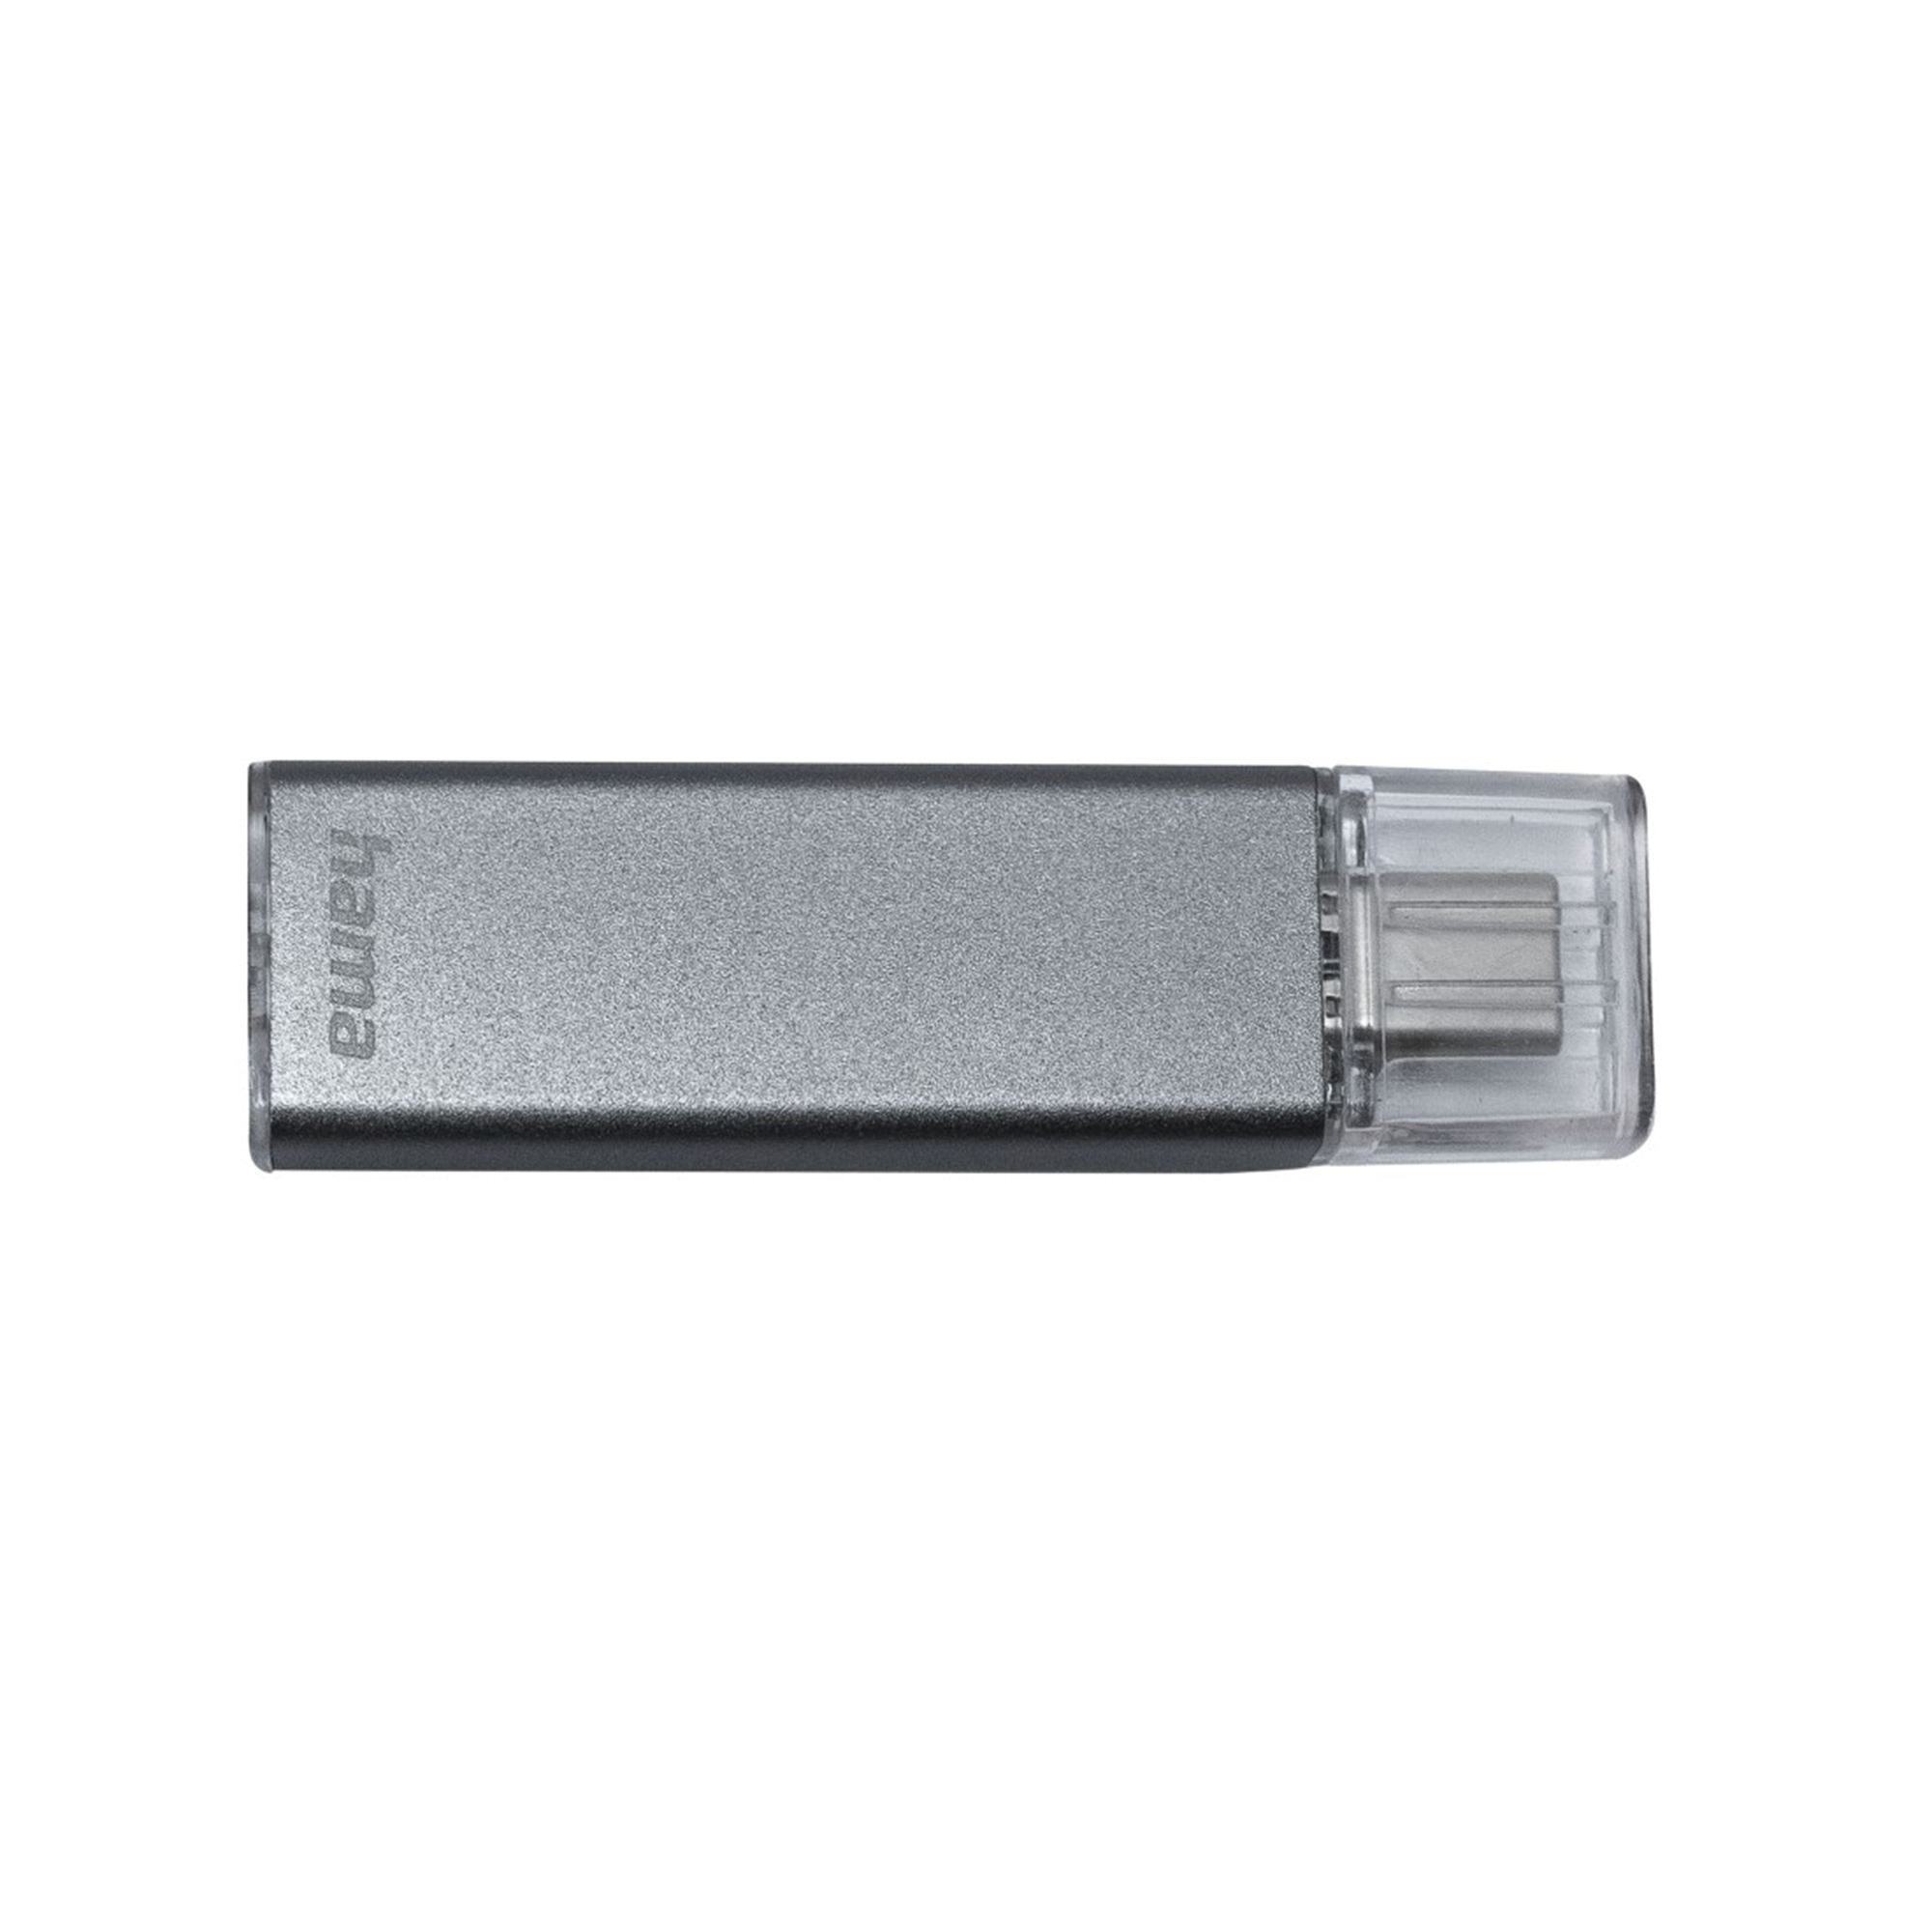 HAMA Uni-C Classic 64 64 USB-Stick GB) GB (Anthrazit